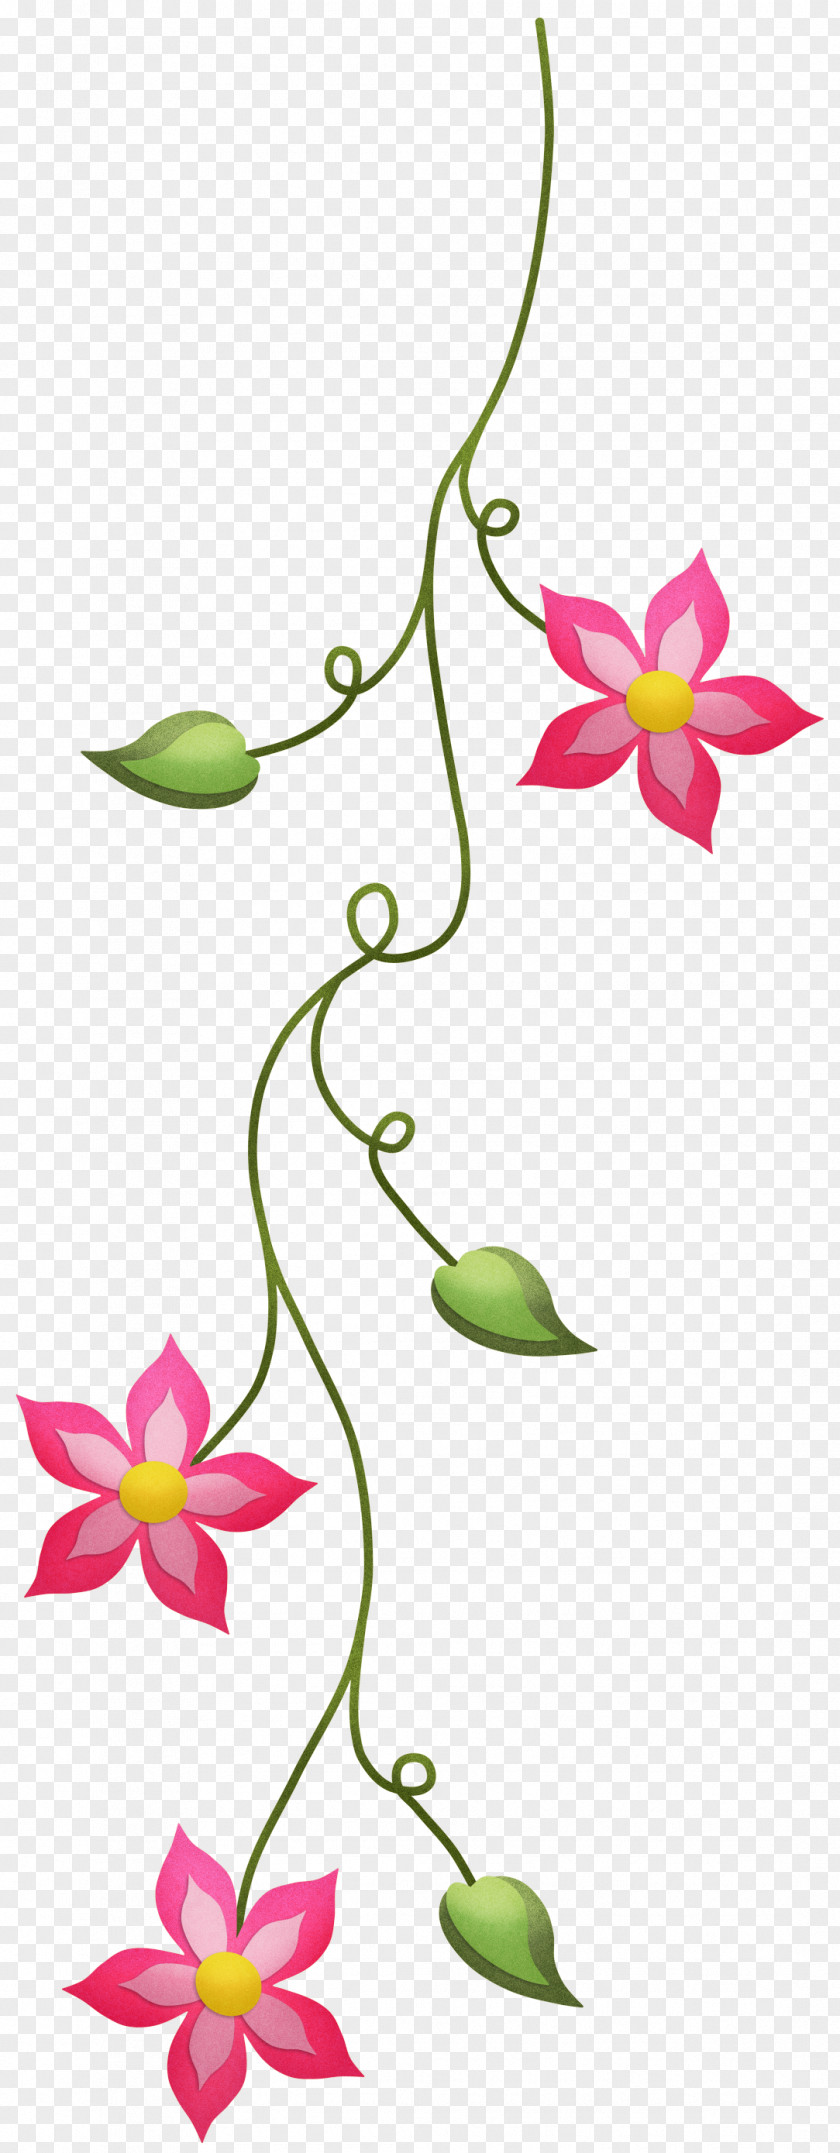 Scrapbook Floral Design Cut Flowers Plant Stem Leaf PNG